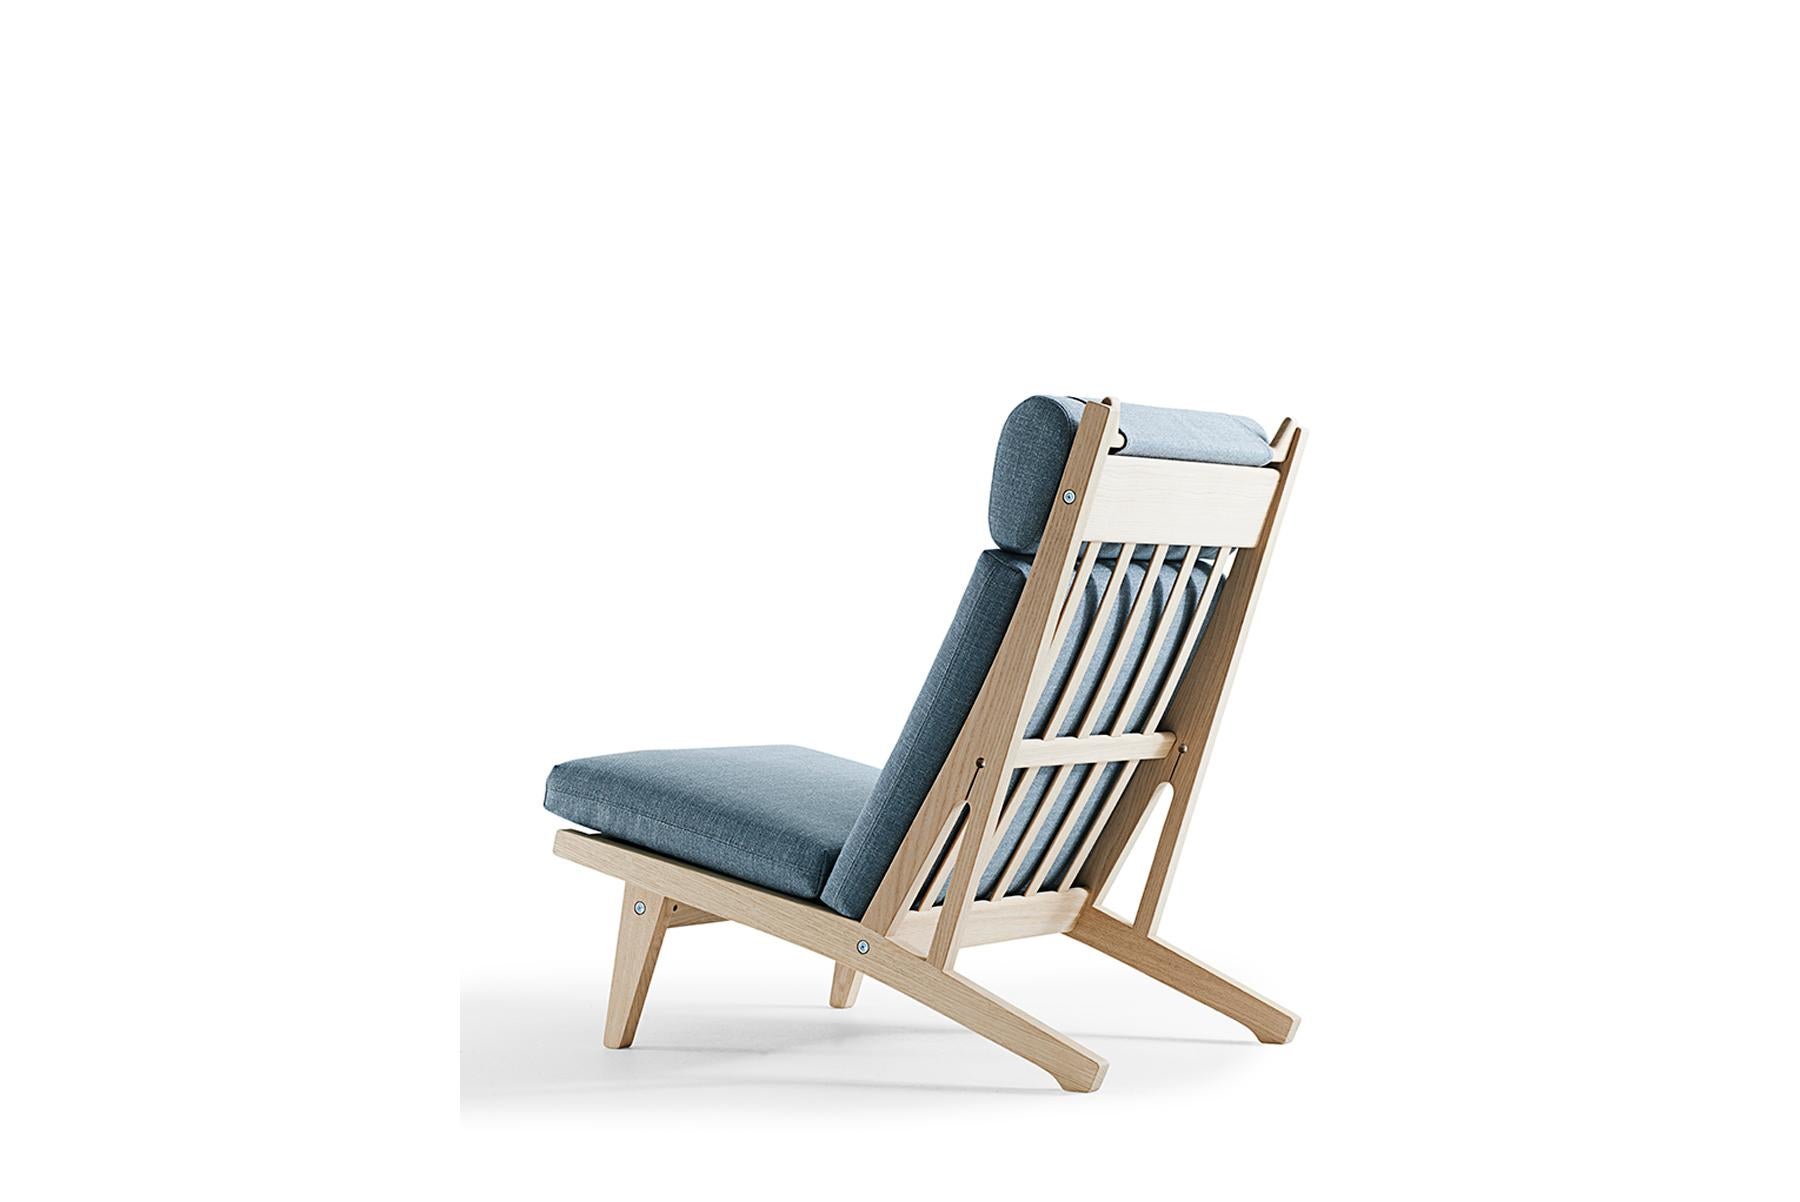 Conçue en 1969 par Hans Wegner, la chaise longue 375A allie des lignes épurées à un savoir-faire remarquable. La chaise est fabriquée à la main dans l'usine de GETAMA à Gedsted, au Danemark, par des ébénistes qualifiés qui utilisent des techniques